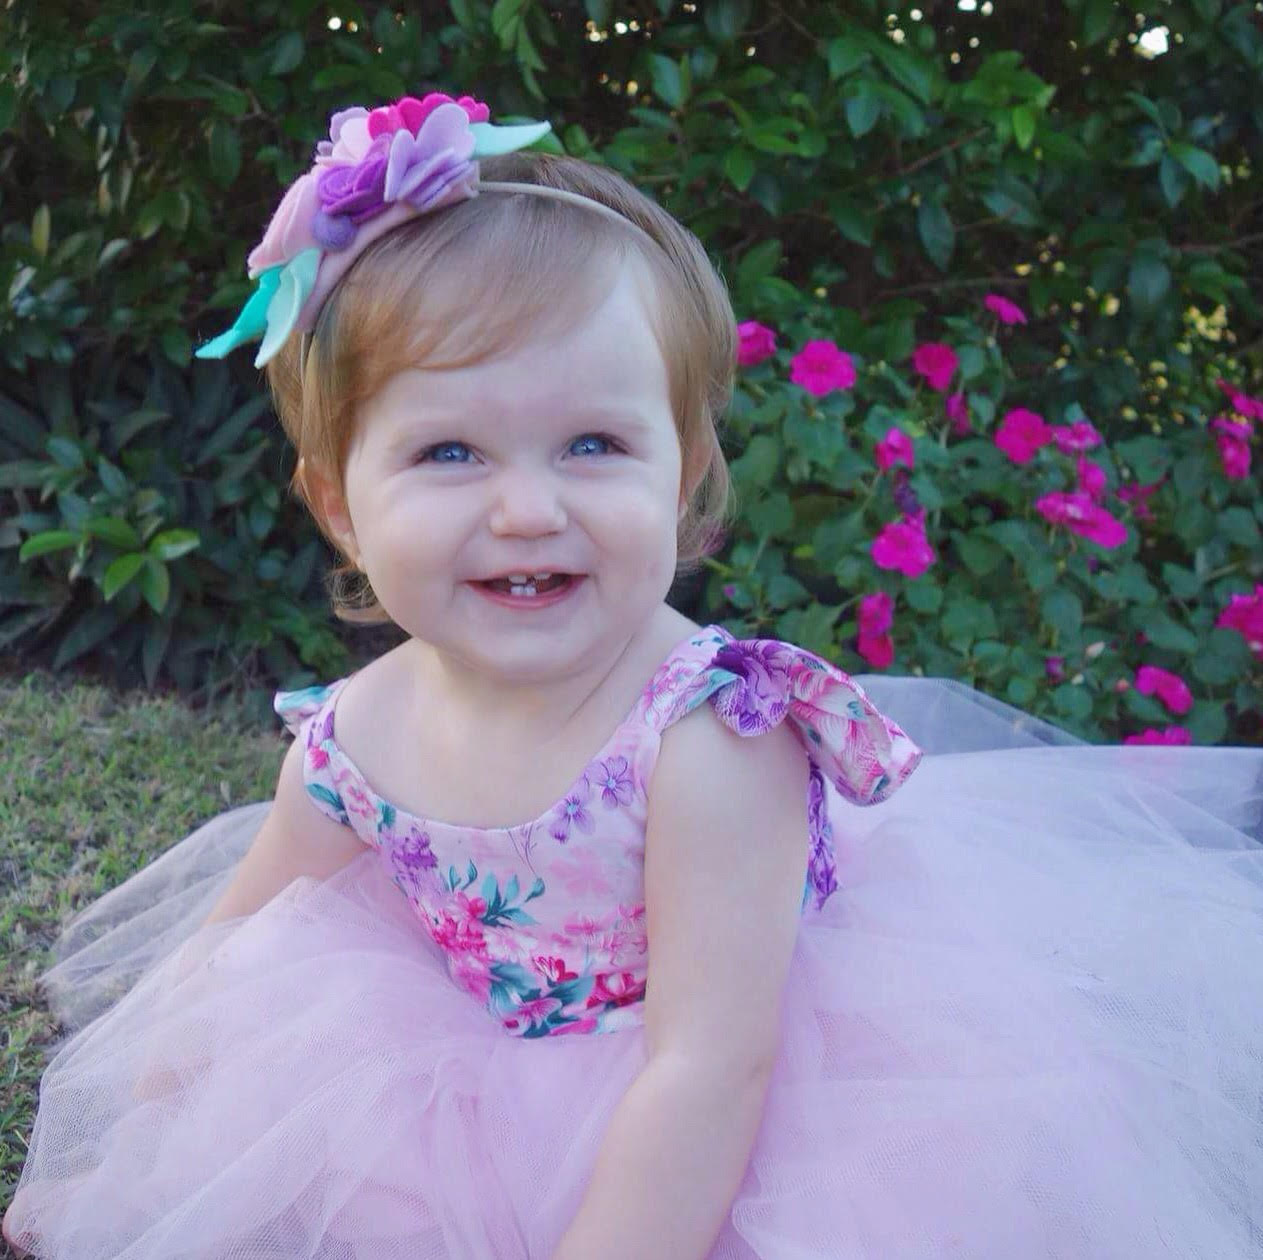 A pastel floral celebration fit for a princess!